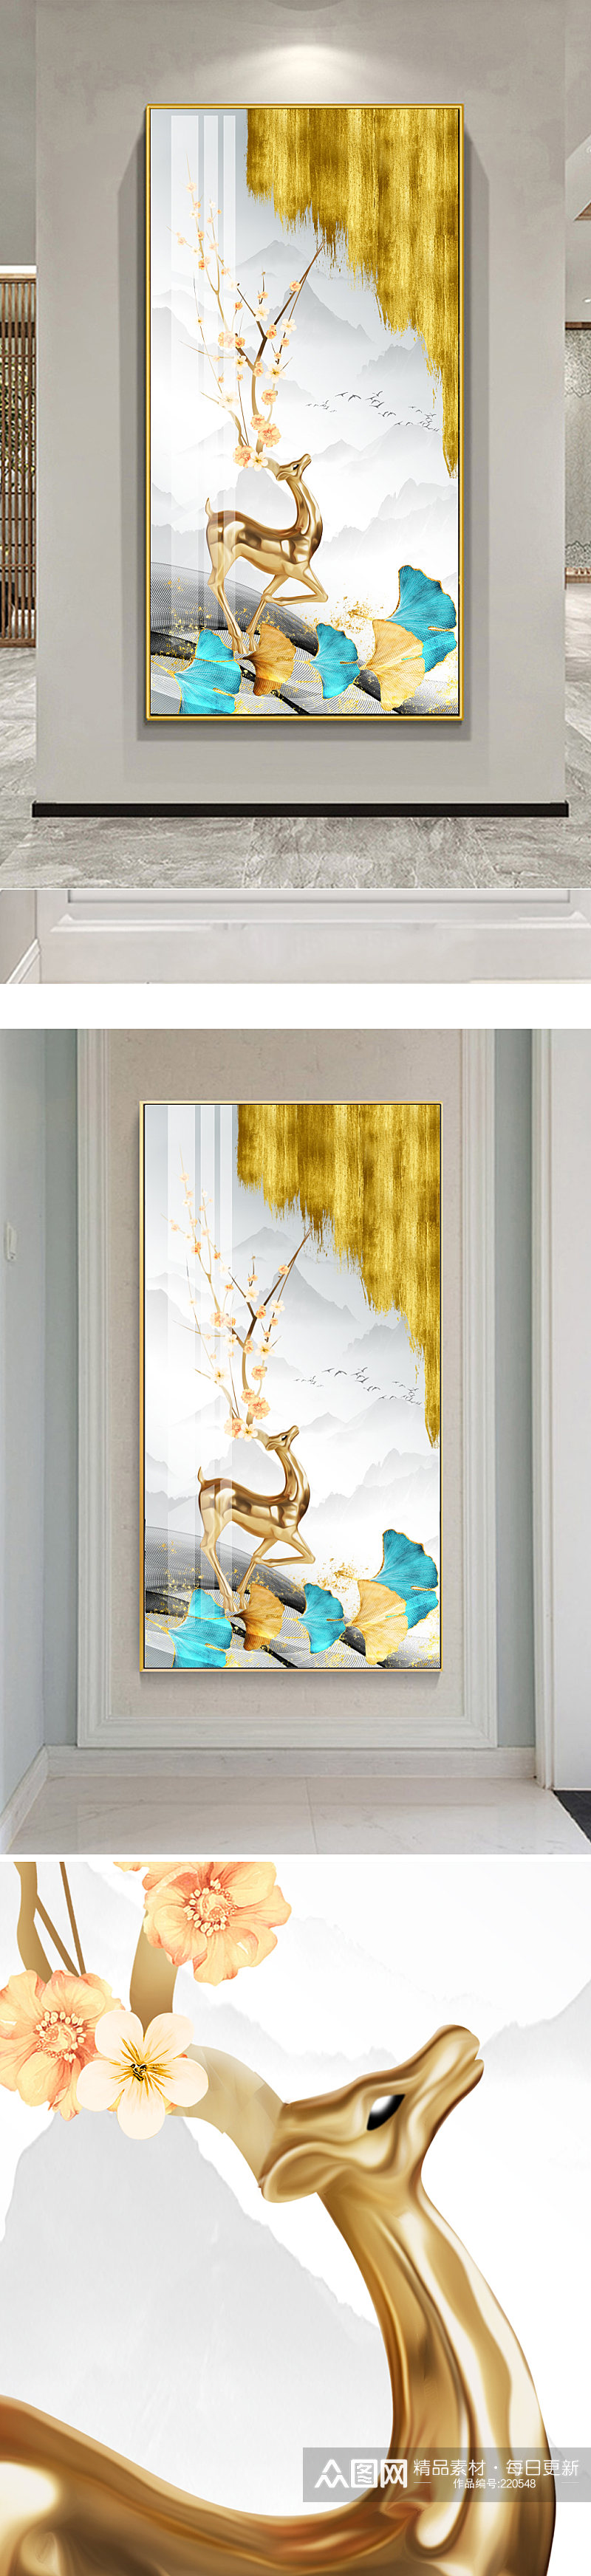 金色麋鹿杏叶玄关装饰画素材